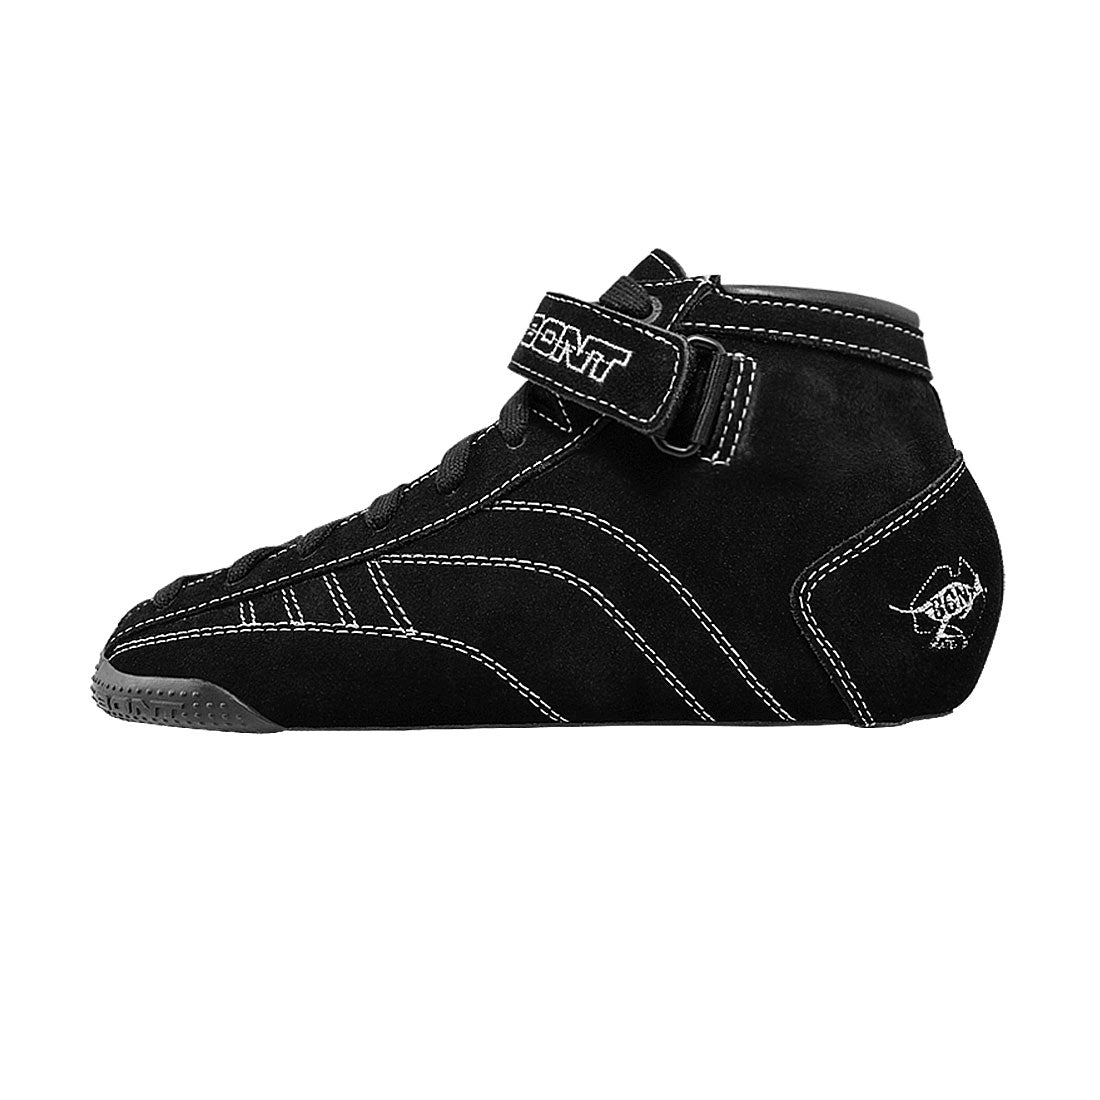 Bont Prostar Suede Boot - Black Roller Skate Boots